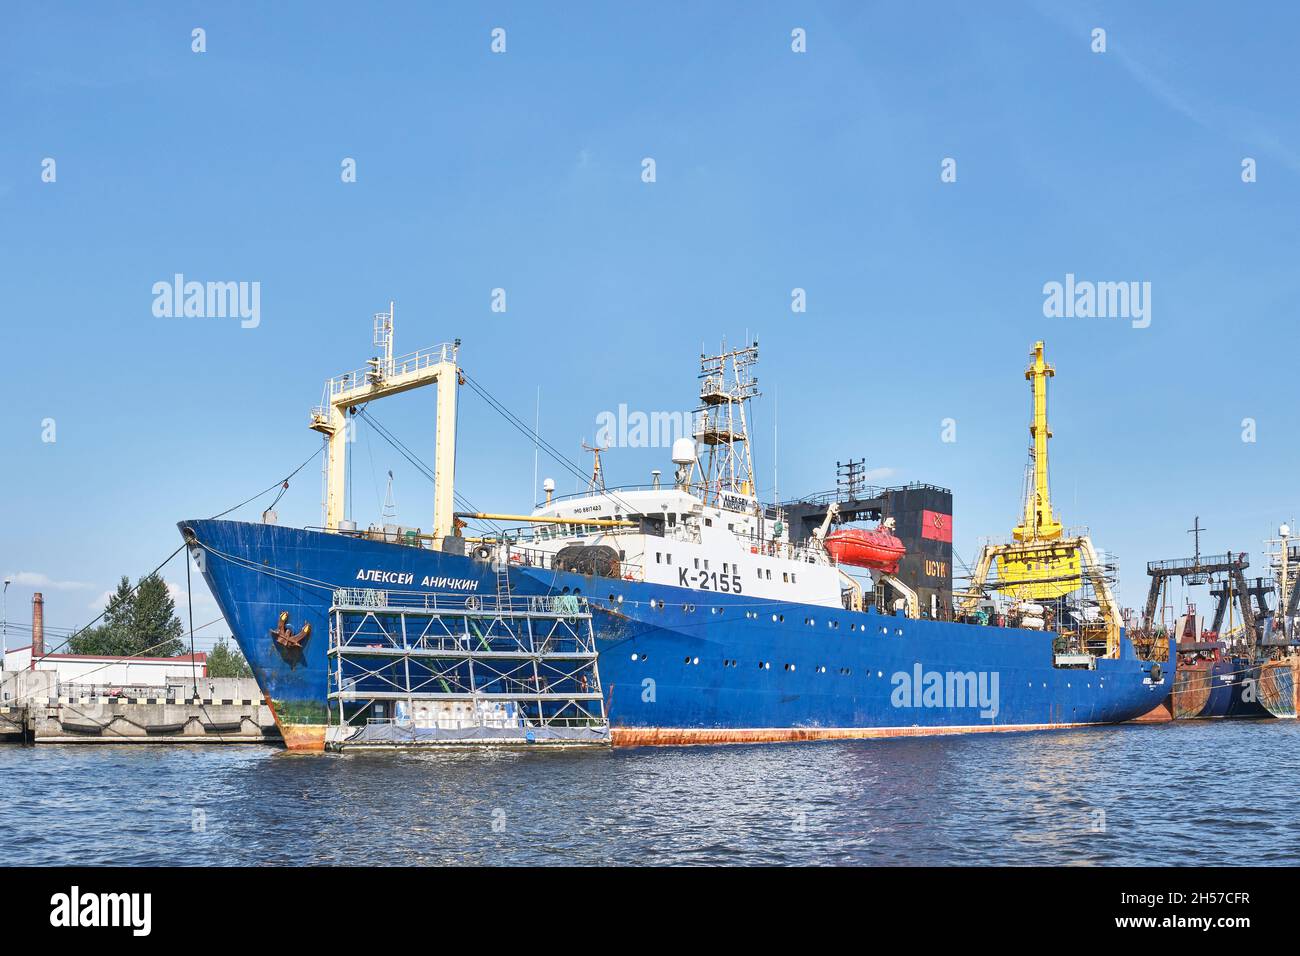 Fischfabrik Schiff, Schiff ALEKSEY ANICHKIN in Reparatur auf dem Fluss Pregolya, Kaliningrad, Russland Stockfoto